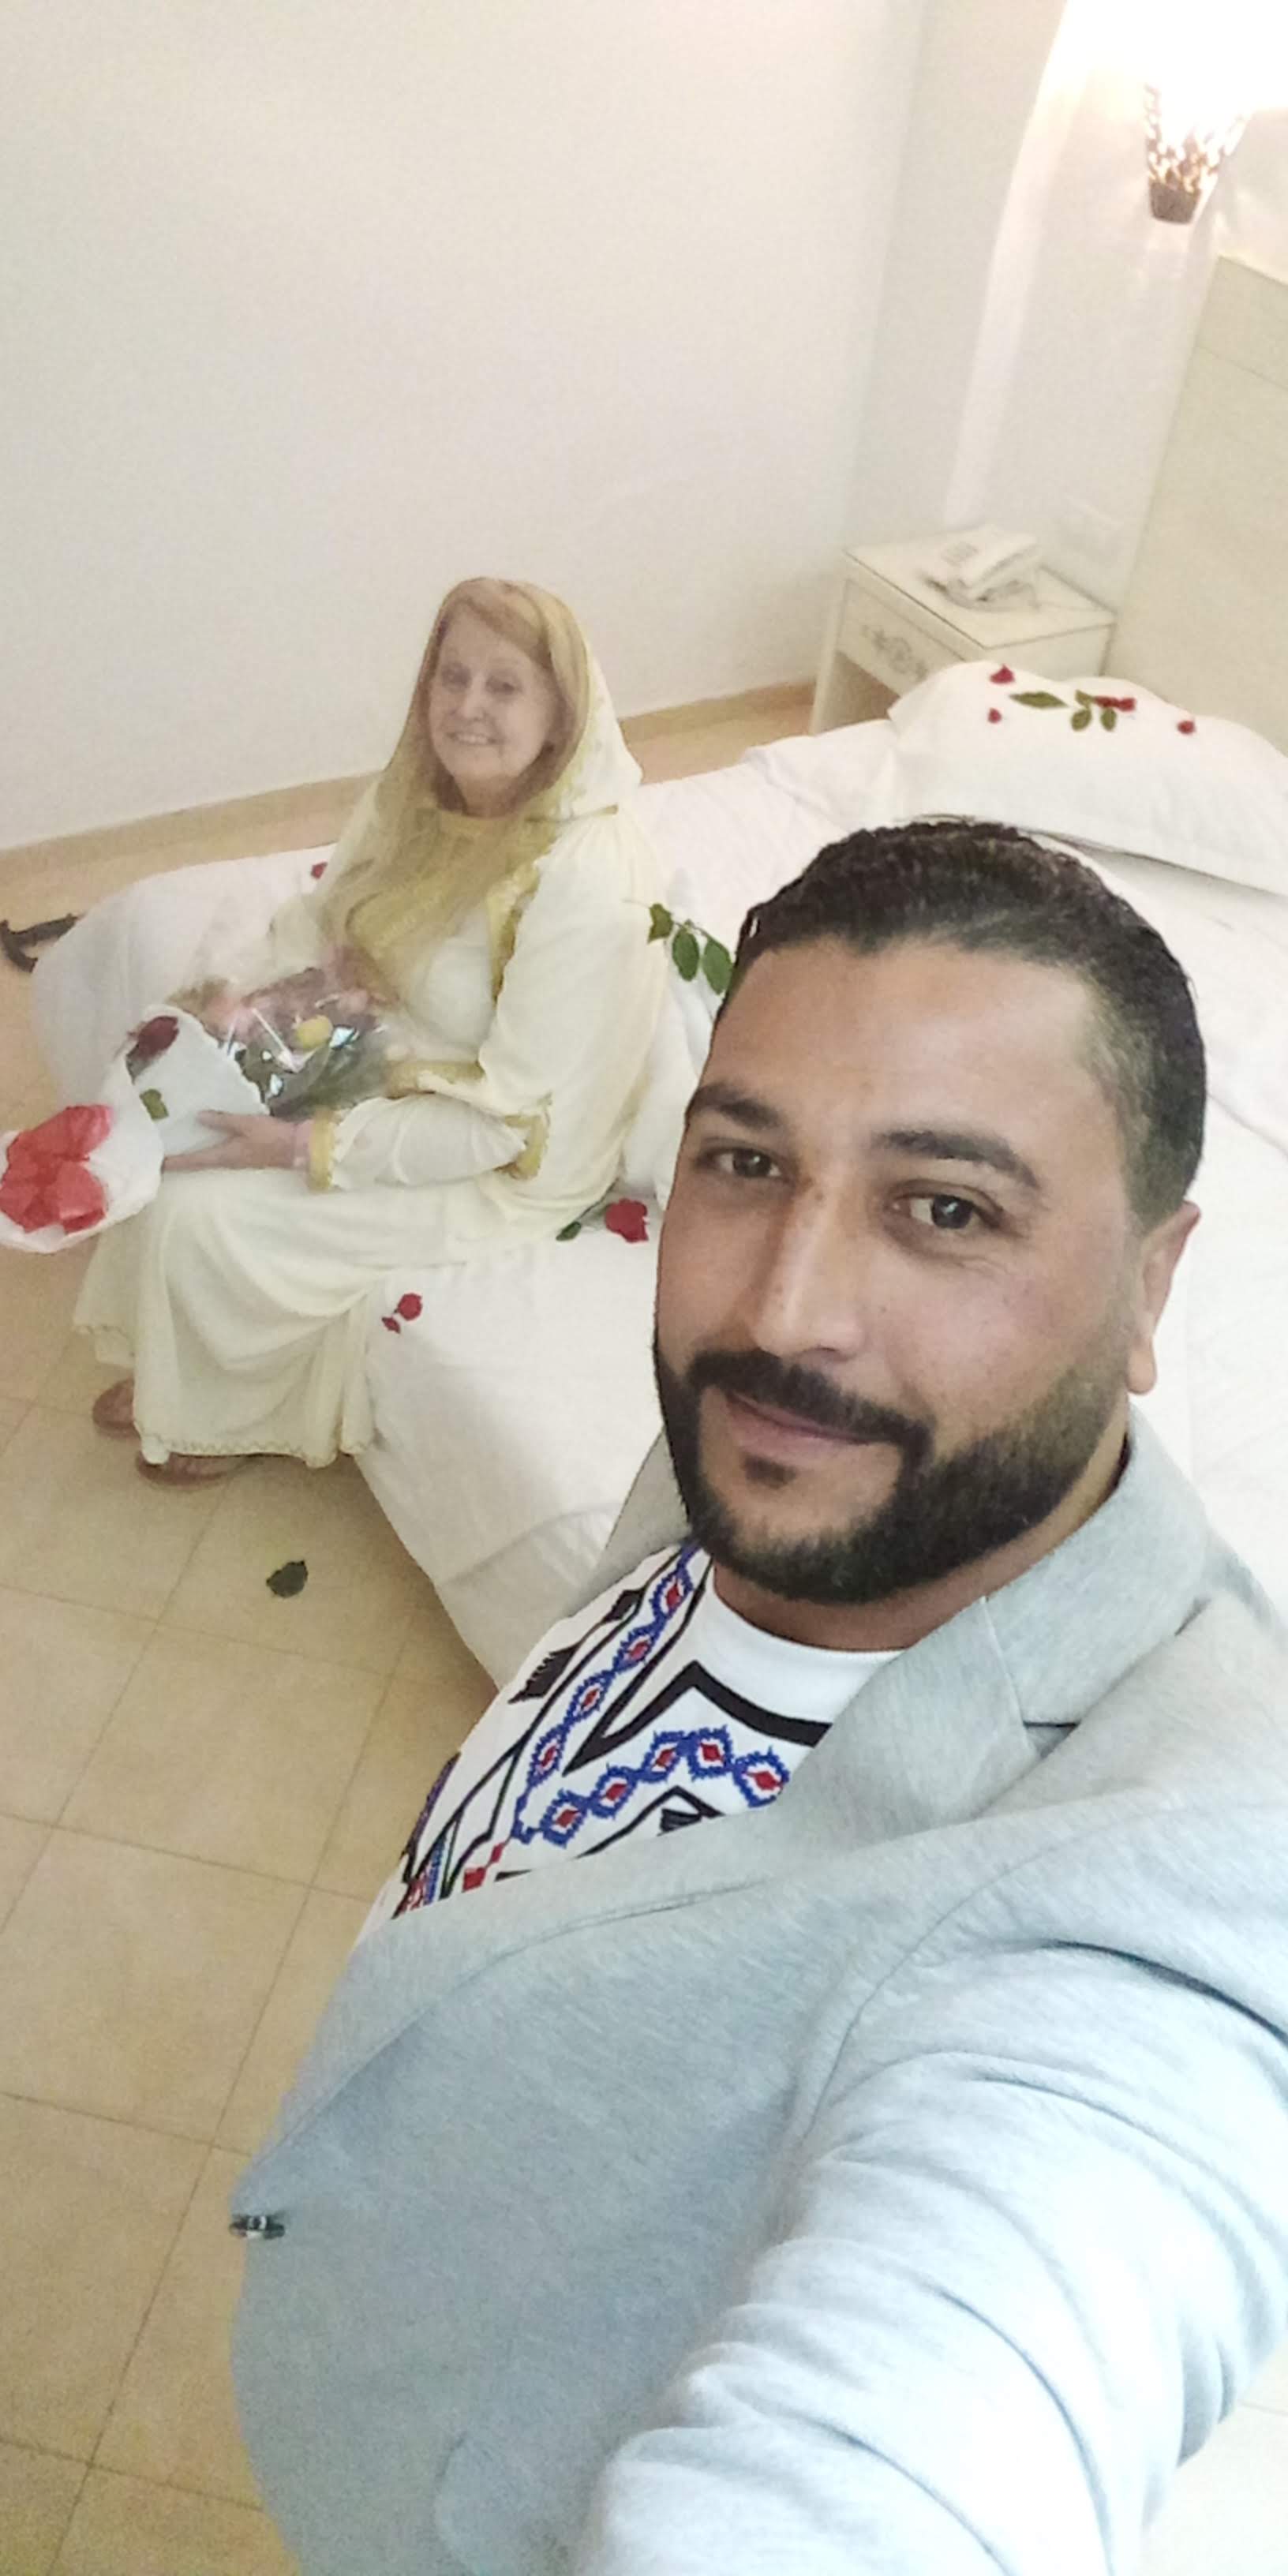 Cặp đôi kết hôn 2 năm sau khi gặp nhau trong một buổi lễ ở Tunisia.